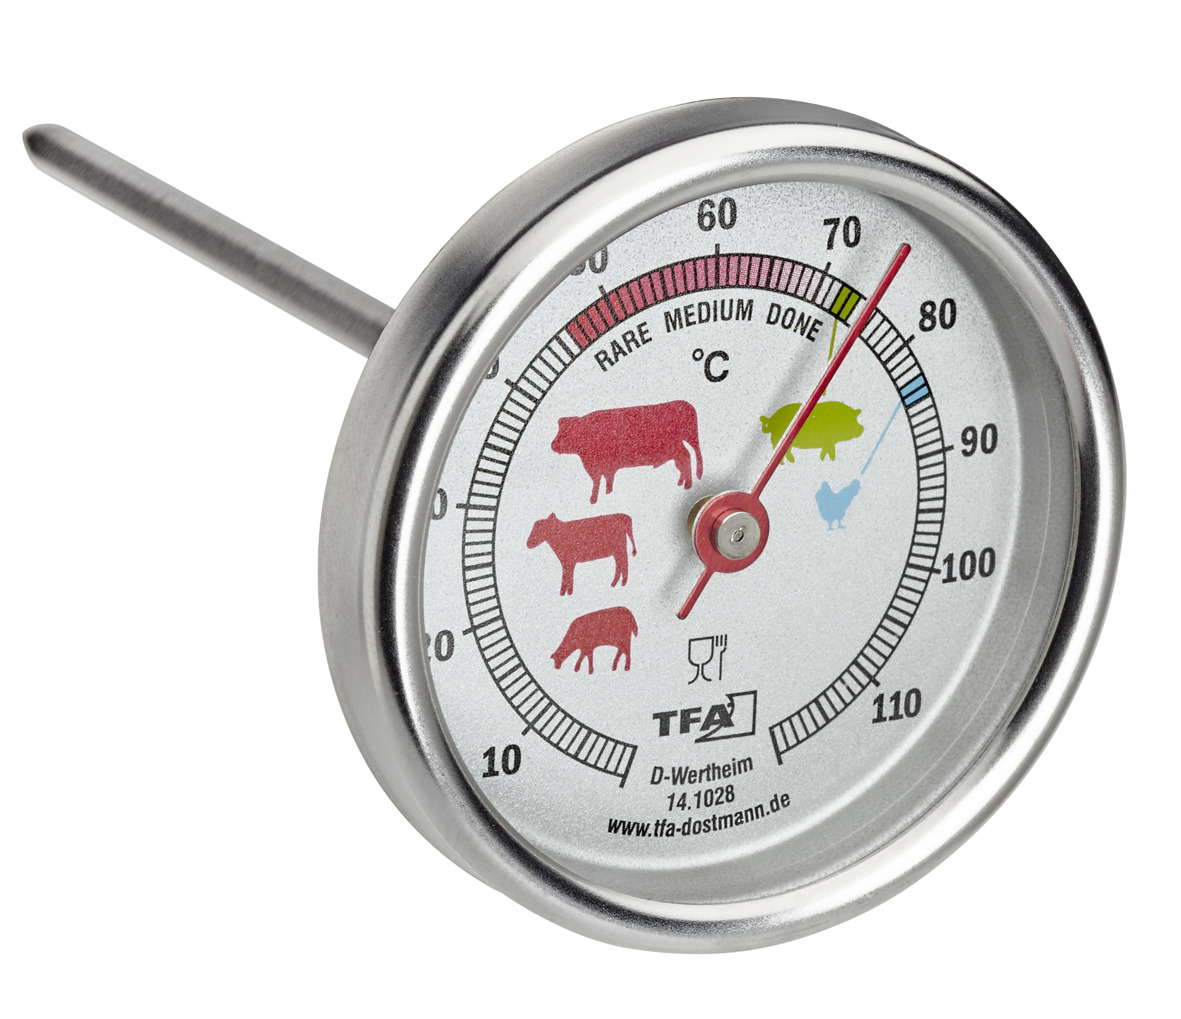 Termometro per carne in acciaio inossidabile